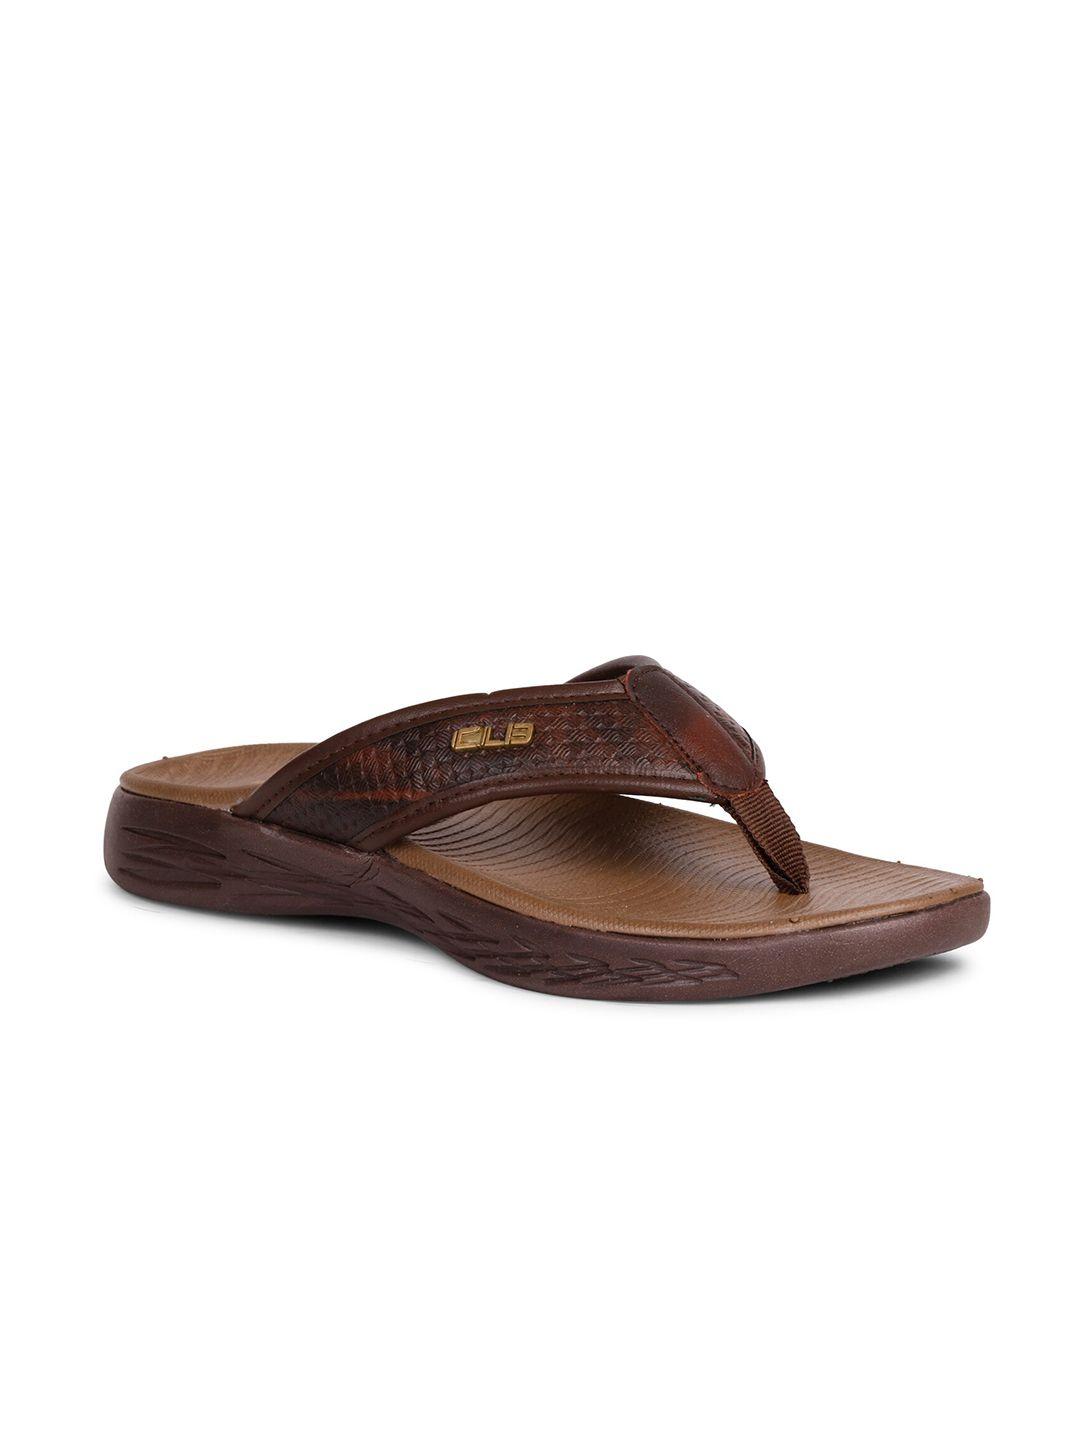 columbus-men-brown-slip-on-rubber-slippers